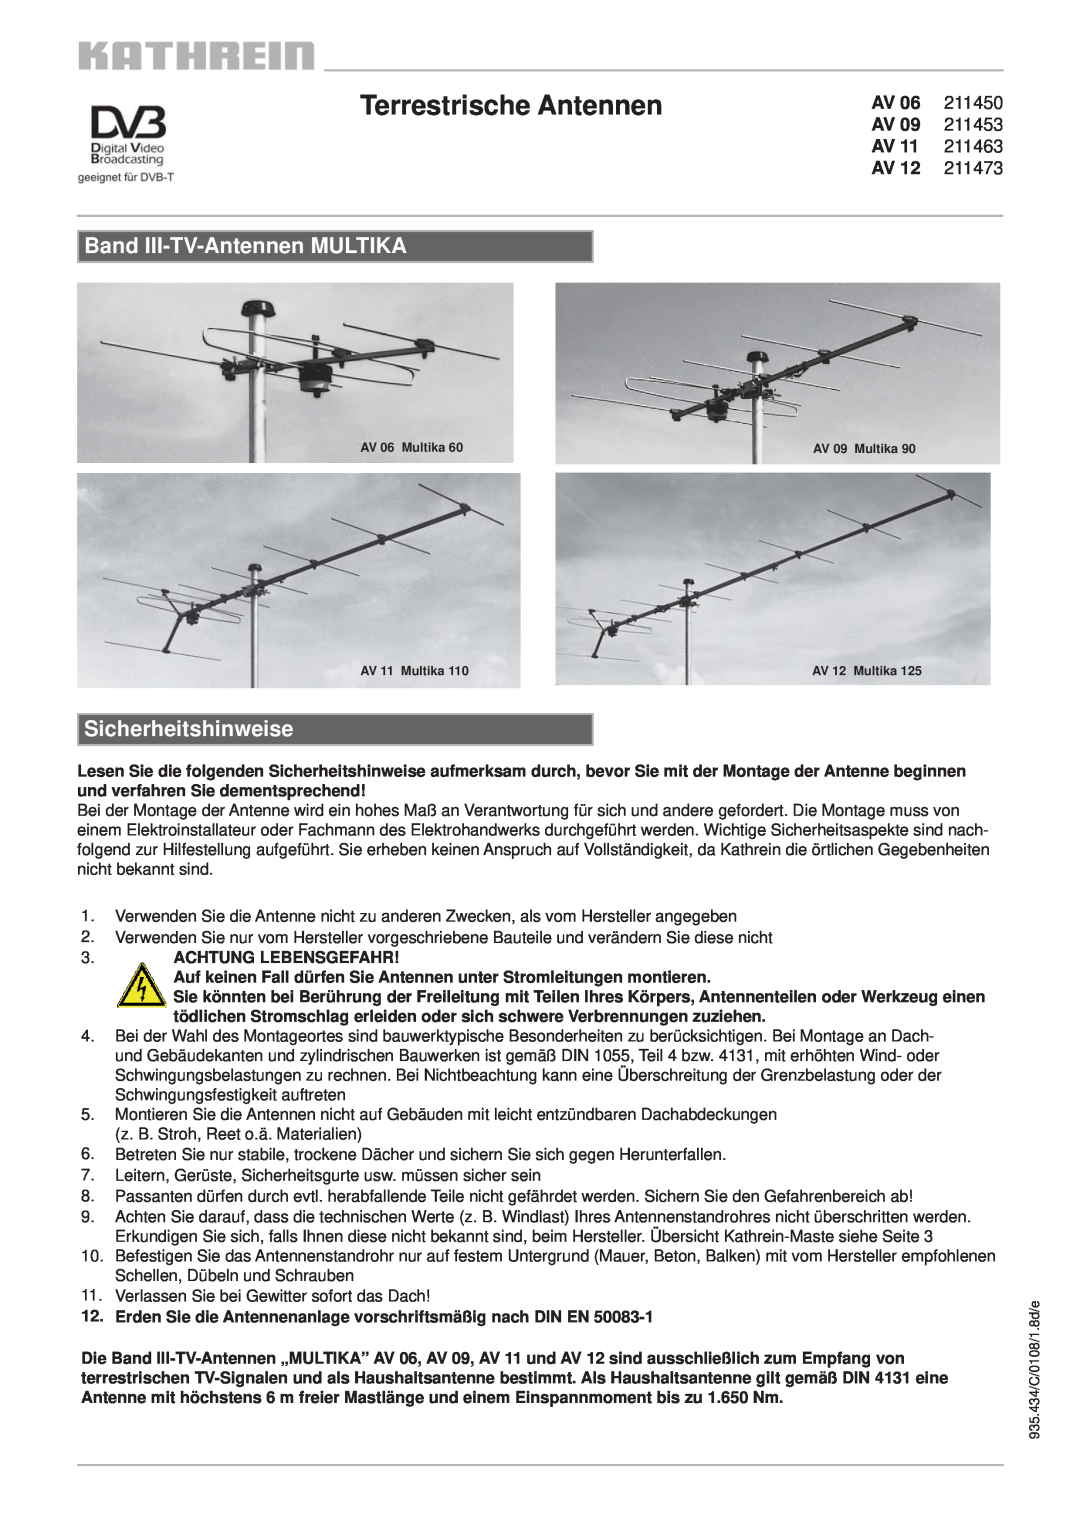 Kathrein AV 11 211463 manual Terrestrische Antennen, Band III-TV-Antennen MULTIKA, Sicherheitshinweise, 211450, 211453 